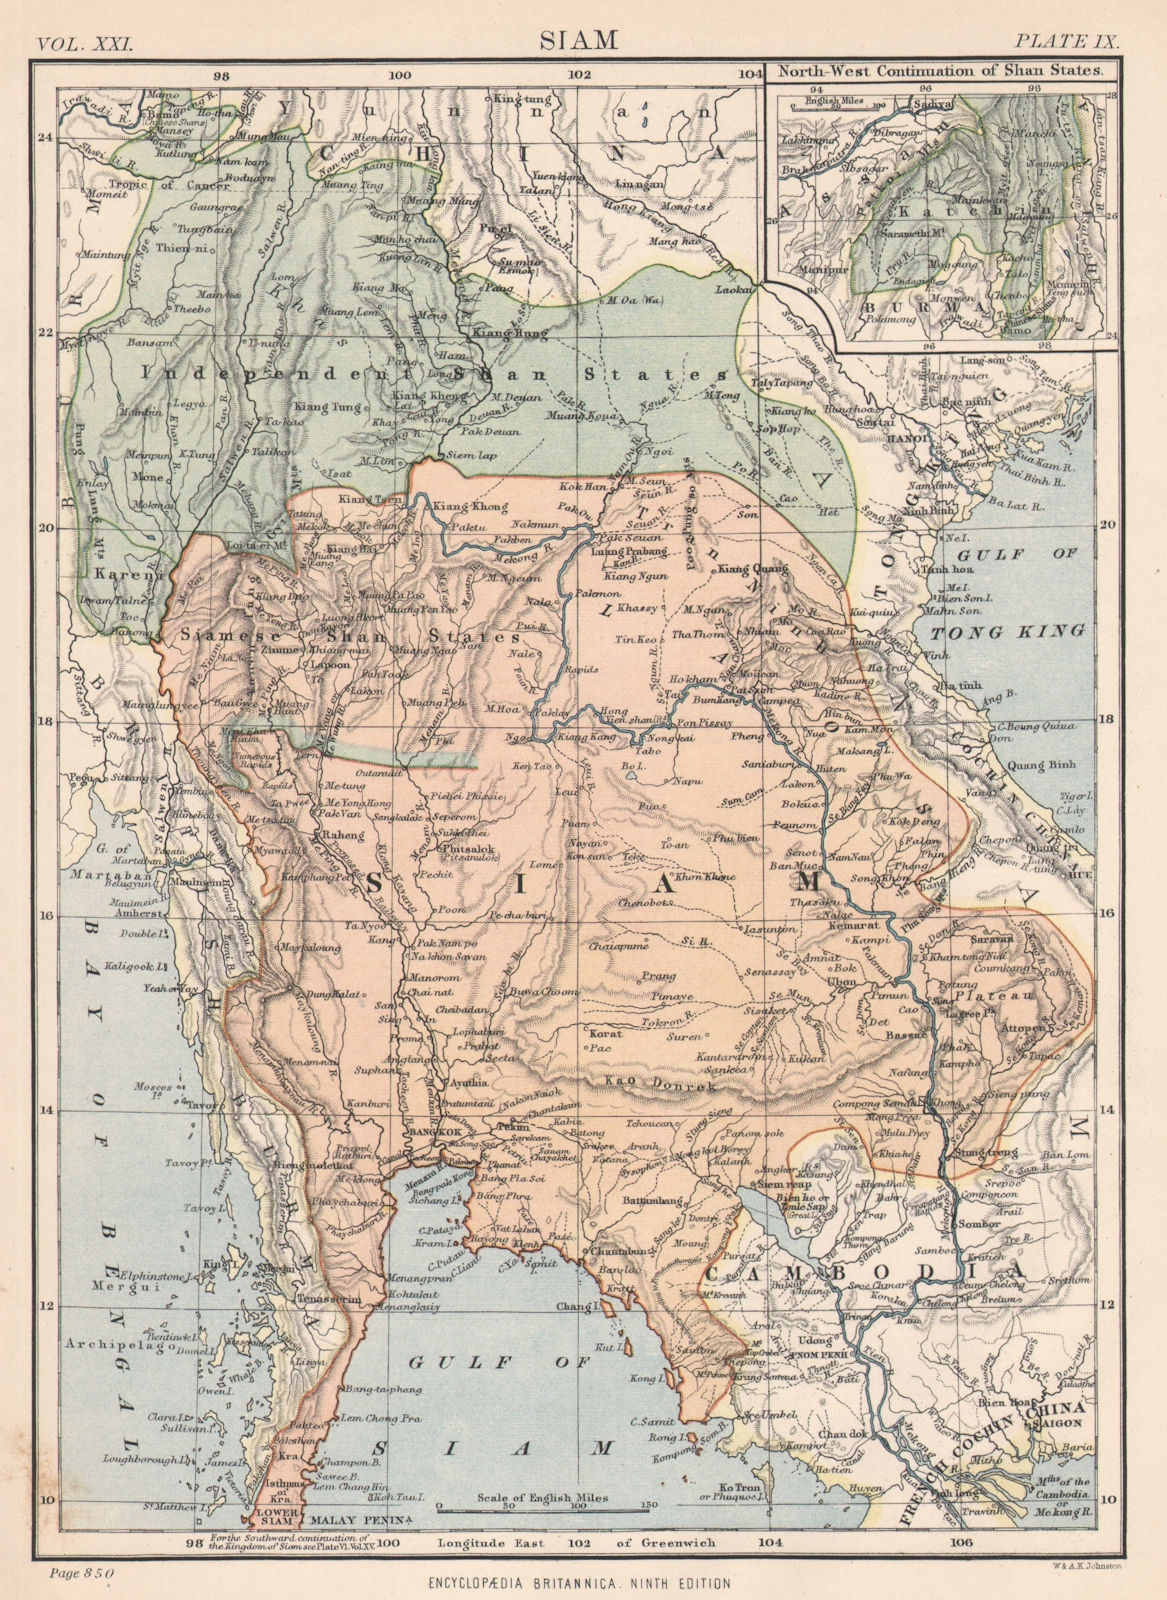 SIAM (THAILAND). Shan states. Laos Myanmar Burma Cambodia. Britannica 1898 map